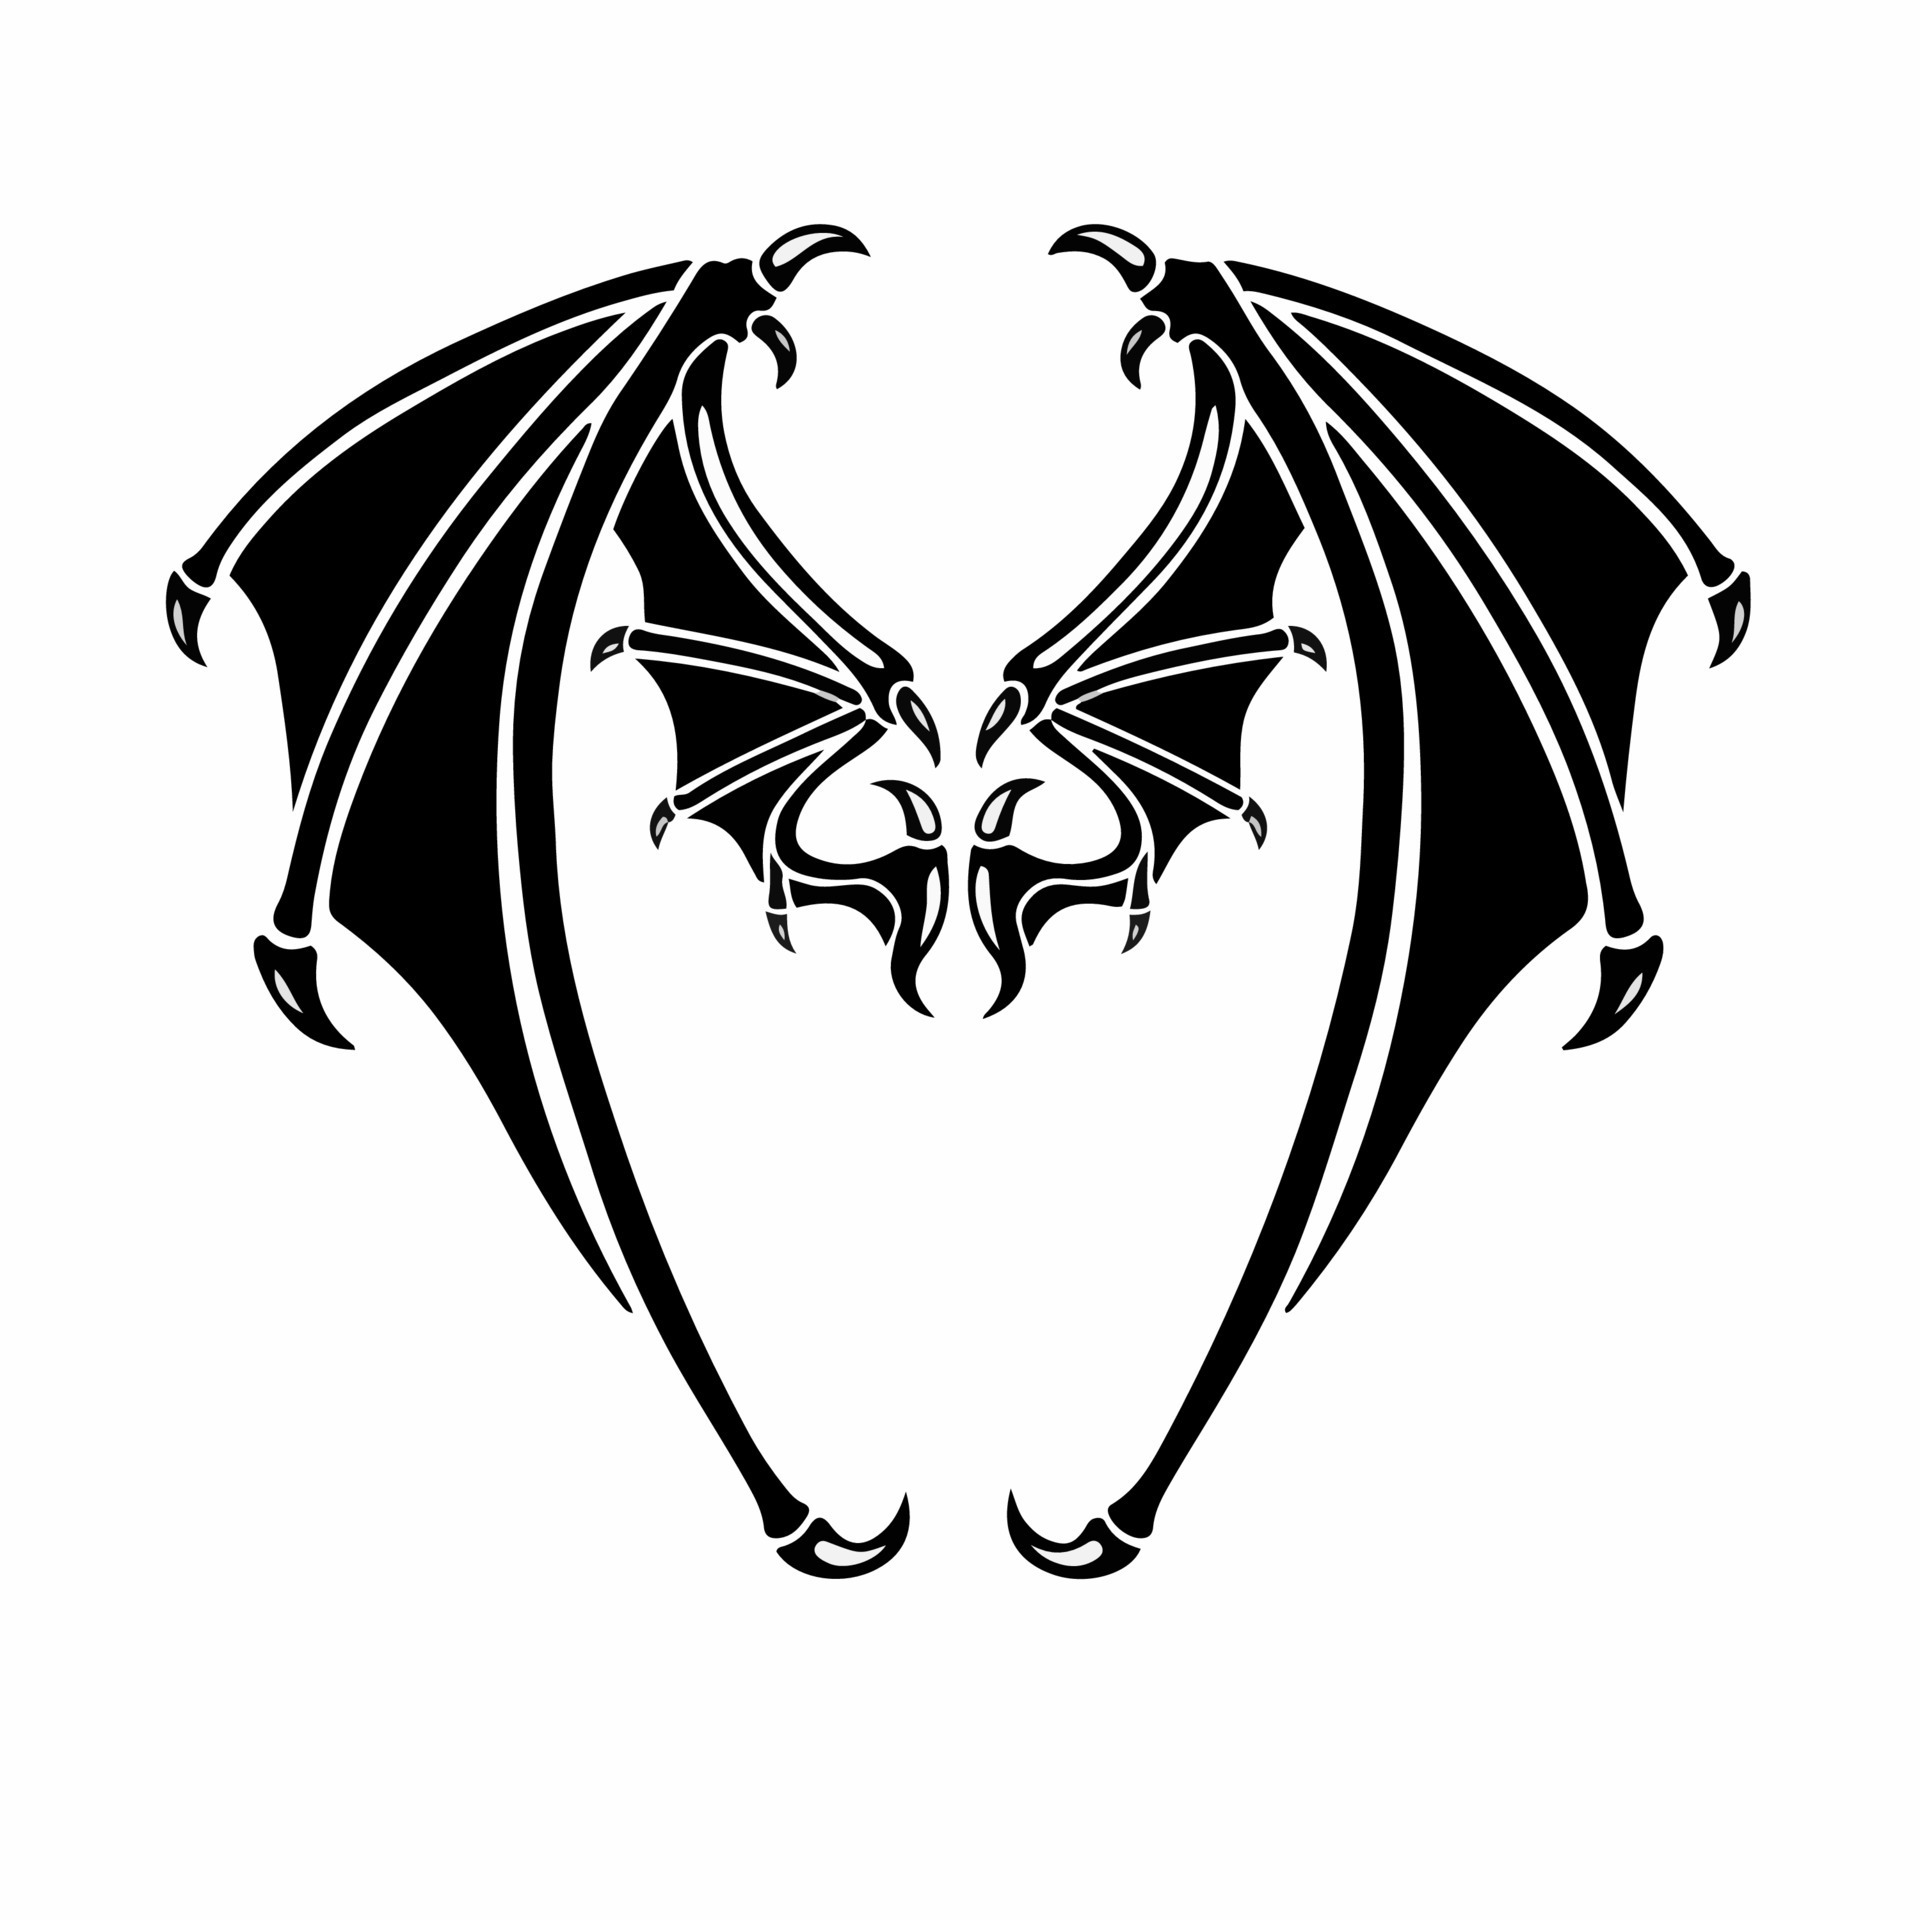 450 Cartoon Of Bat Tattoo Designs Illustrations RoyaltyFree Vector  Graphics  Clip Art  iStock